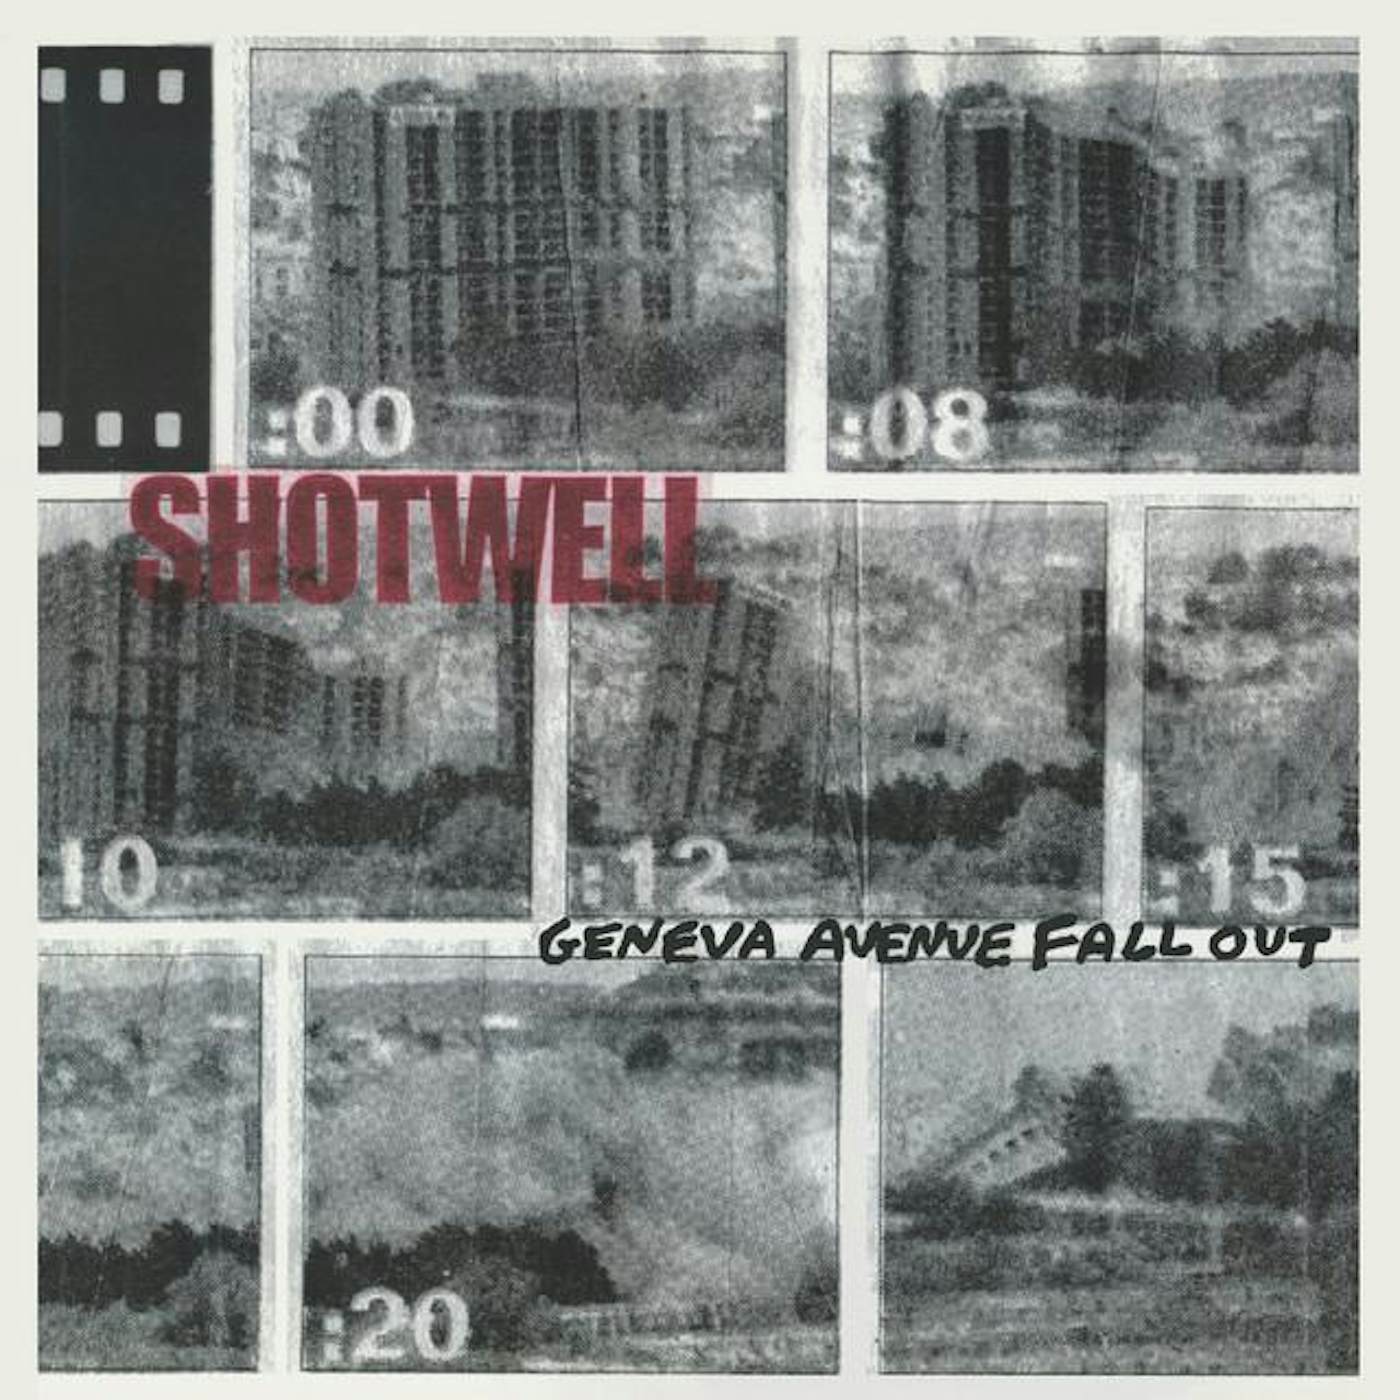 Shotwell